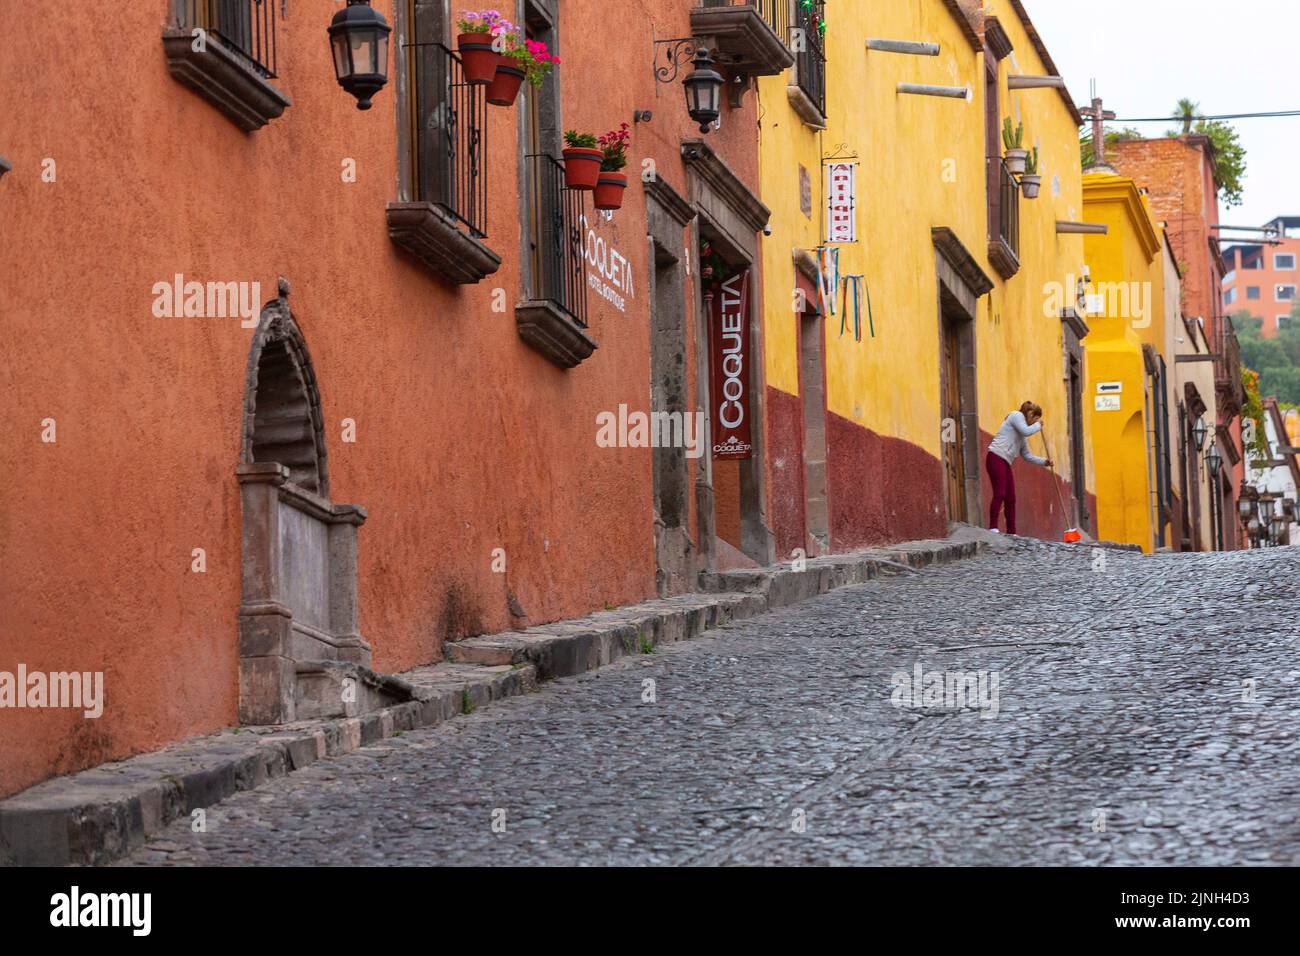 Une femme balaie la passerelle de la Calle Cuadrante bordée de bâtiments de style colonial espagnol colorés dans le centre-ville historique de San Miguel de Allende, au Mexique. Banque D'Images